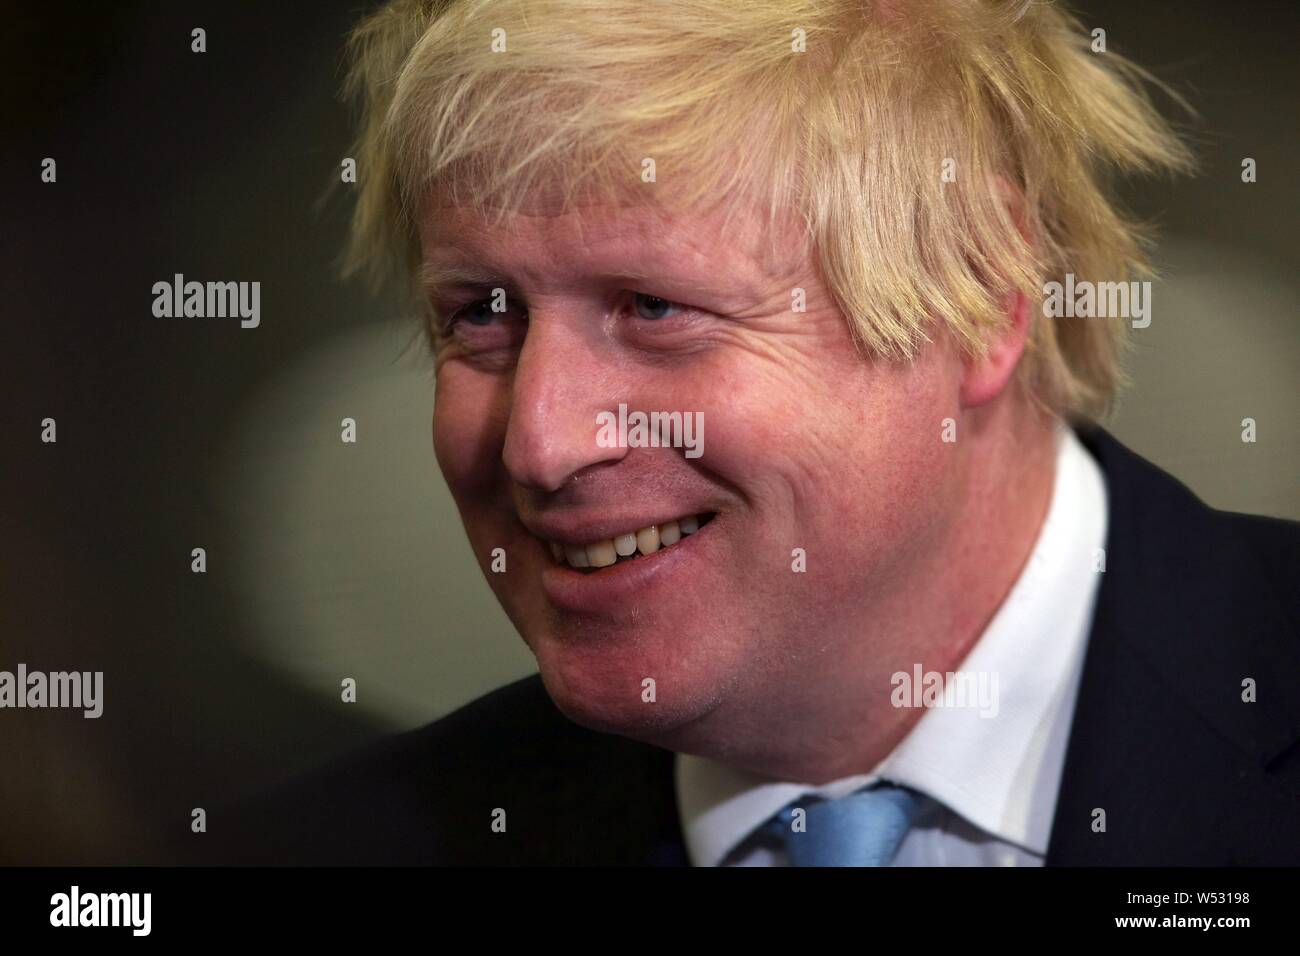 UXBRIDGE, ENGLAND - Mai 07: Boris Johnson der Bürgermeister von London in die Zählung für Uxbridge und Ruislip, wo er die M.P. für die West London Wahlkreis. Am 8. Mai 2015, England. an der Brunel University in London während der Uxbridge und South Ruislip zählen am 8. Mai 2015 in Uxbridge, England. Das Vereinigte Königreich hat zu den Urnen gegangen für eine neue Regierung in einem der am stärksten umkämpften allgemeine Wahlen in der jüngsten Geschichte zu stimmen. Stockfoto